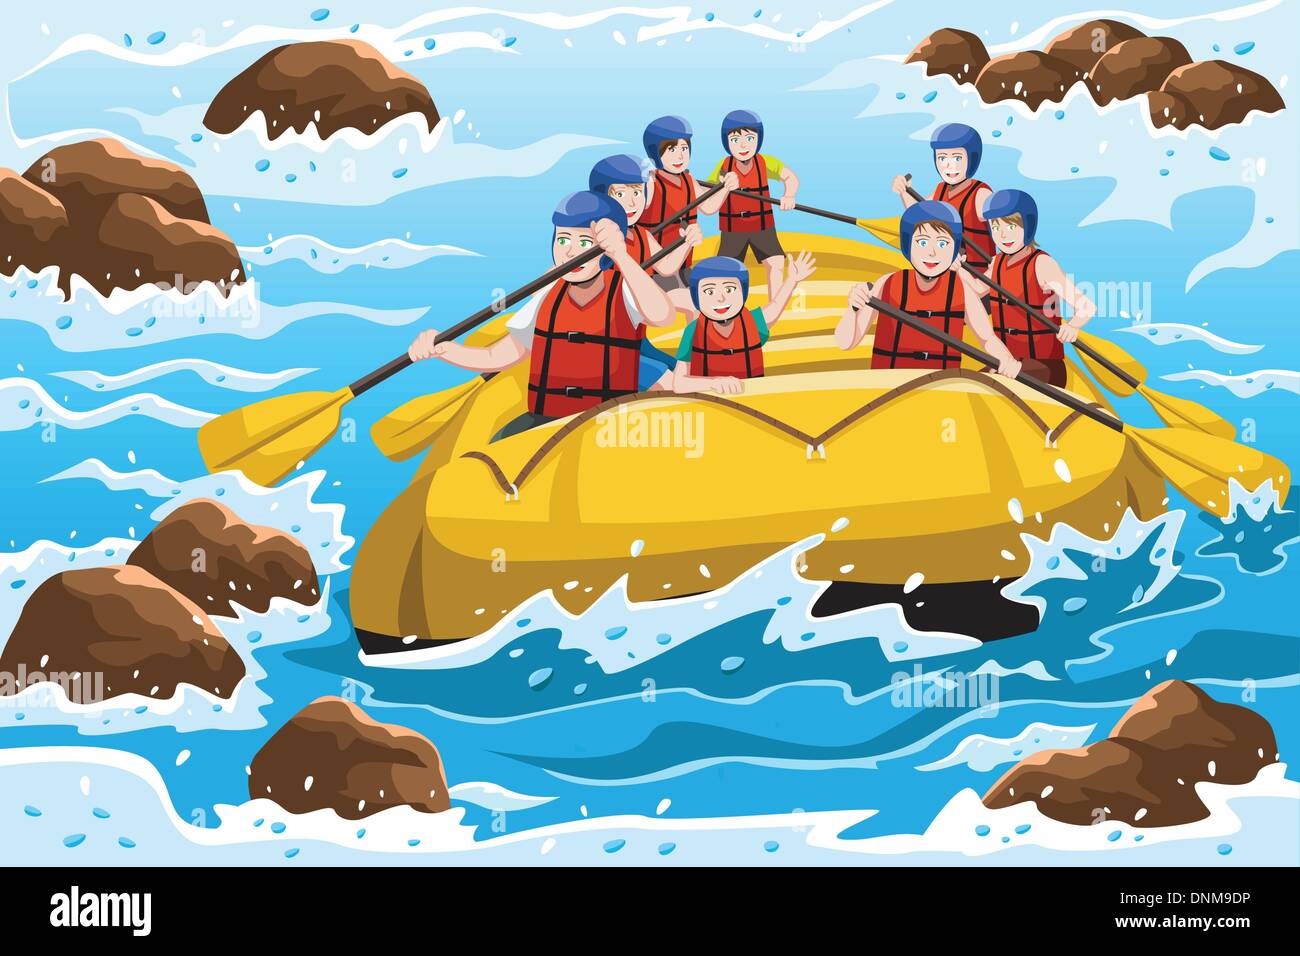 Un vecteur illustration d'un groupe de gens heureux du rafting sur la rivière Illustration de Vecteur